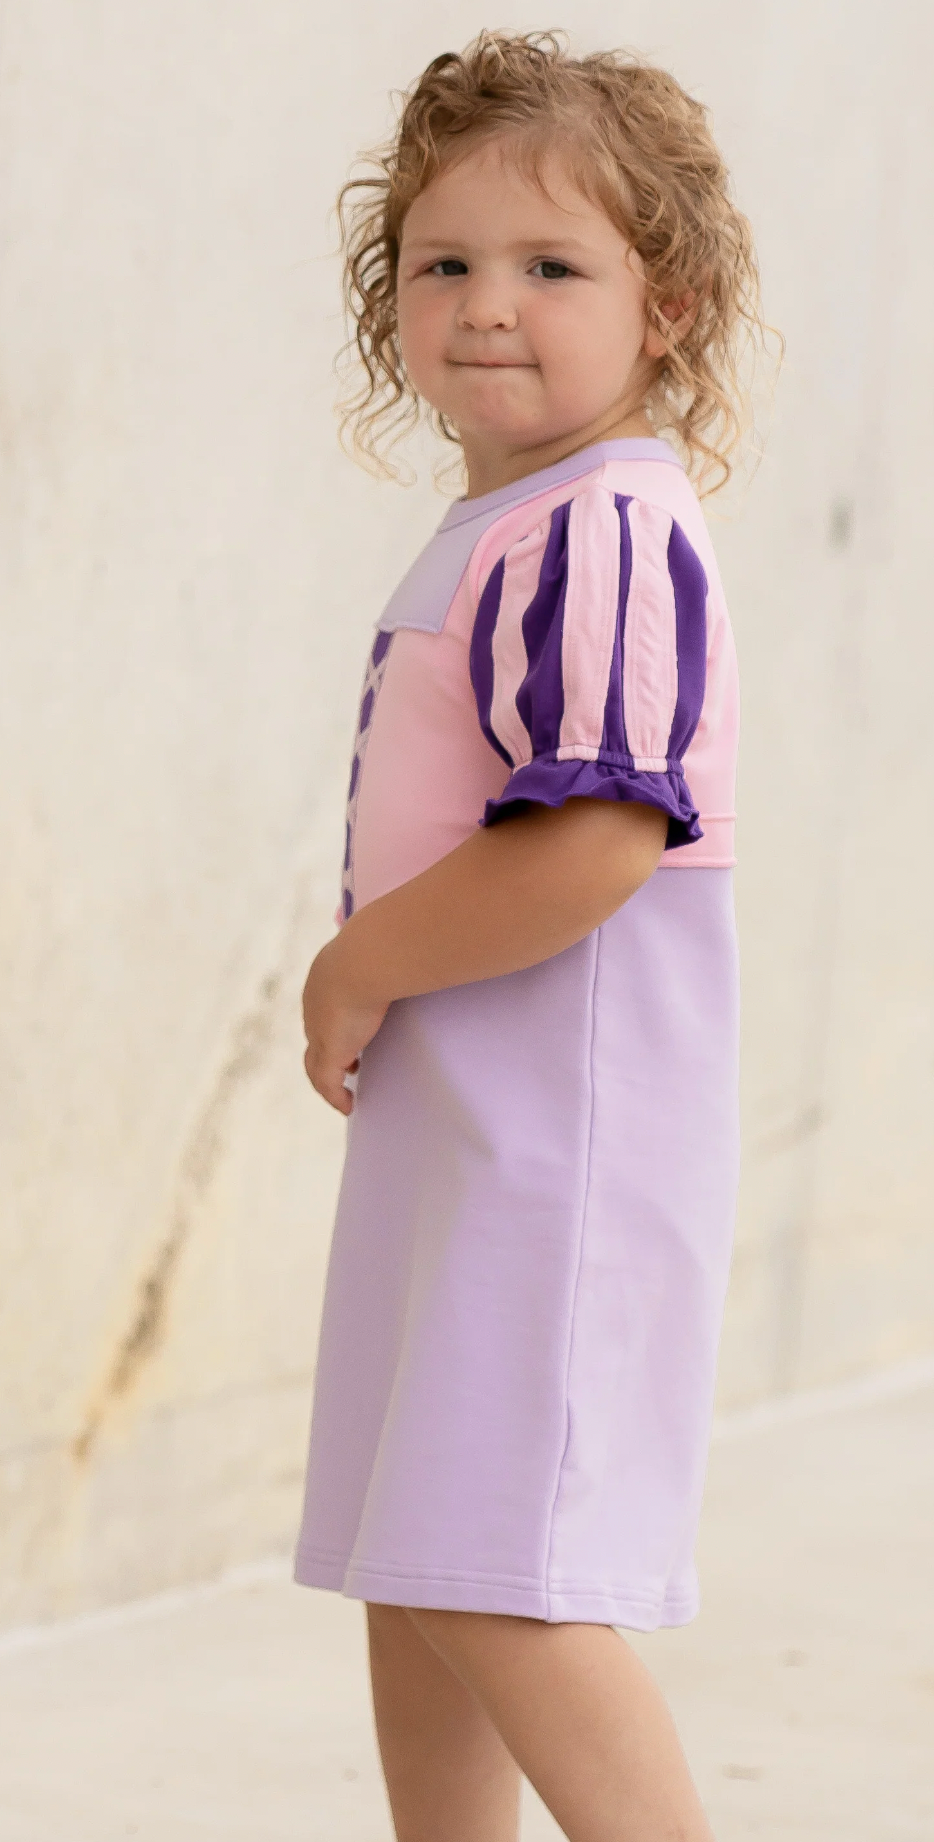 Princess Playtime Dress - Purple